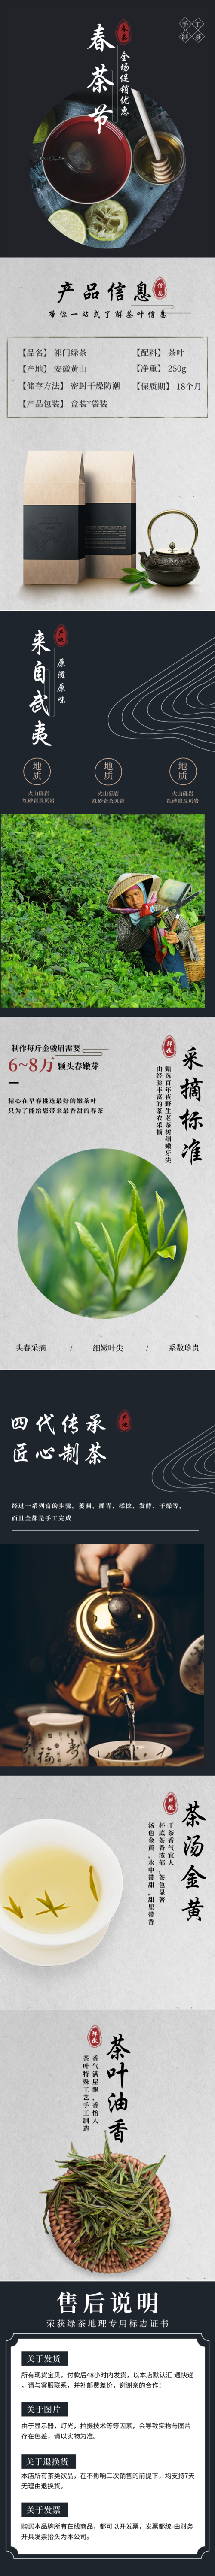 中国风春茶促销活动宝贝详情主页